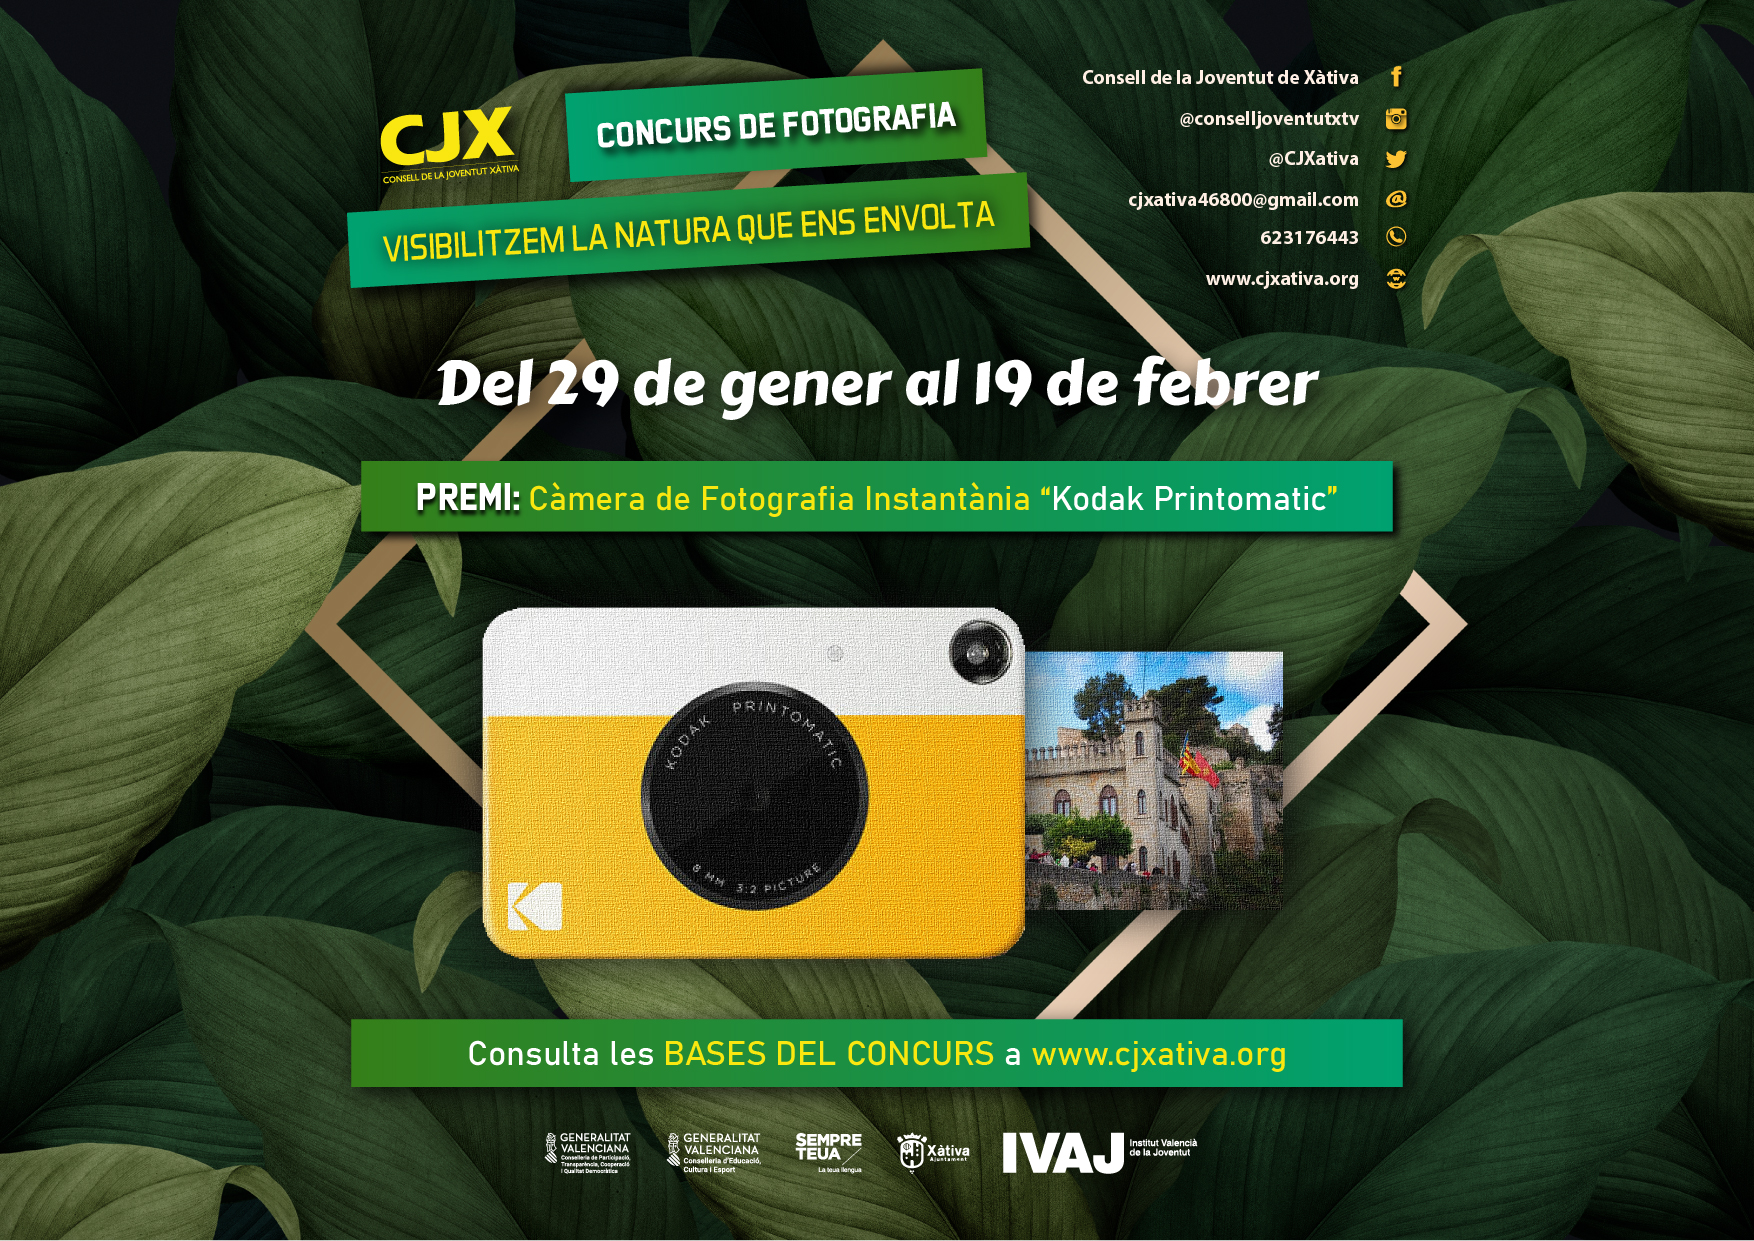 Participa del Concurs de Fotografia en la Natura fins el 19 de febrer.  Consulta les Bases ací. - Consell de la Joventut de Xàtiva